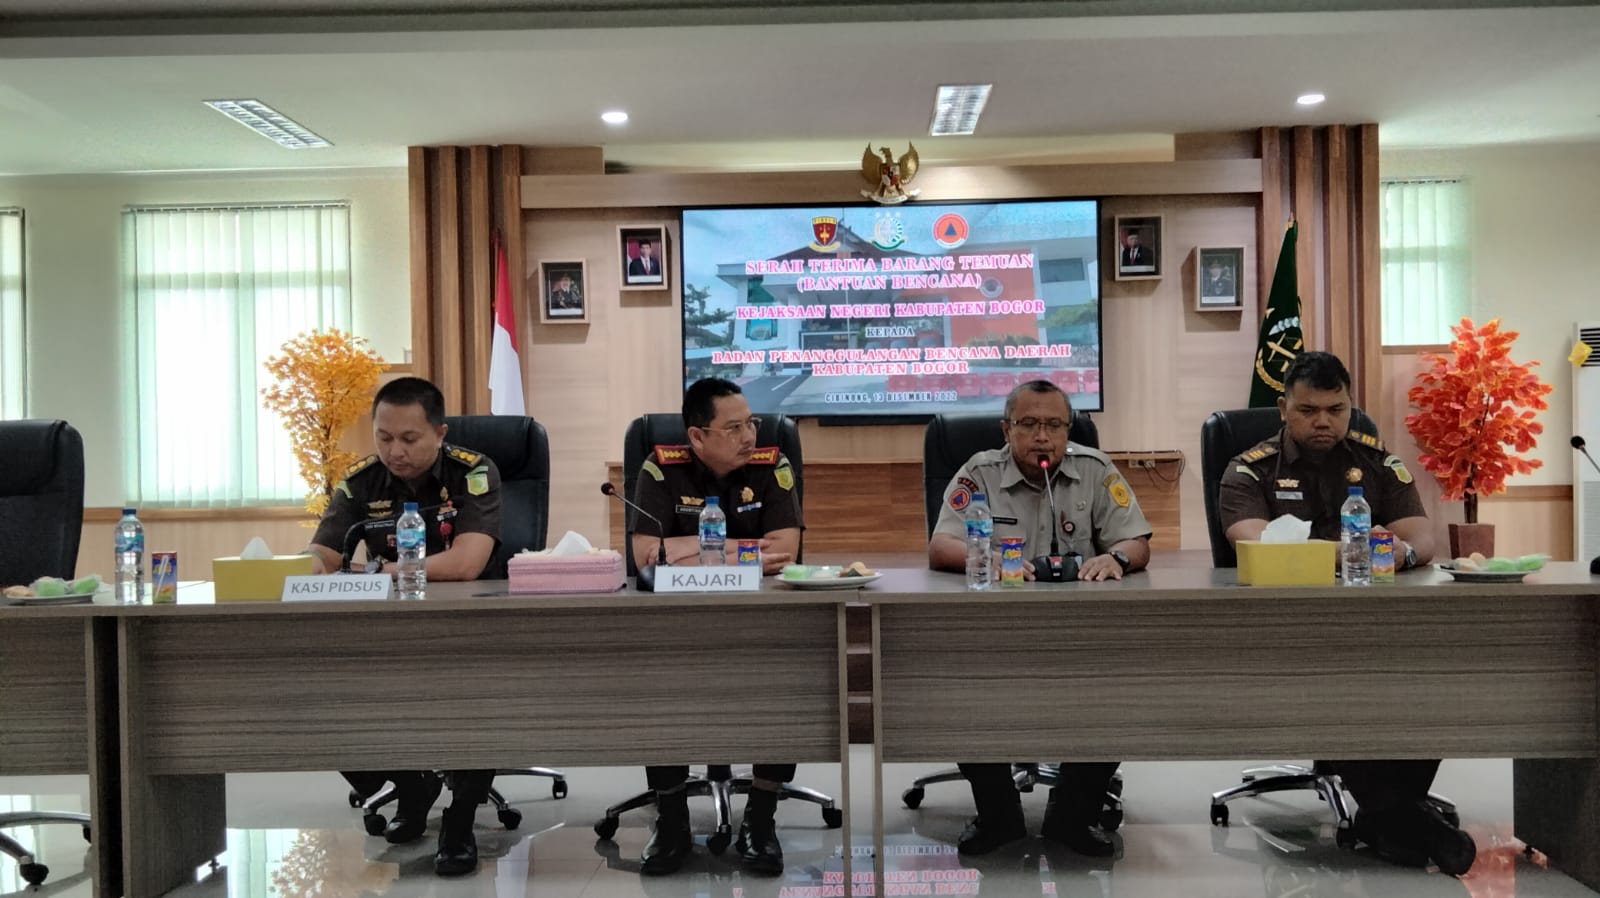 Kejari saat menyerahkan hasil temuan kasus korupsi kepada BPBD Kabupaten Bogor. (SANDIKA FADILAH /JABAREKSPRES.COM)